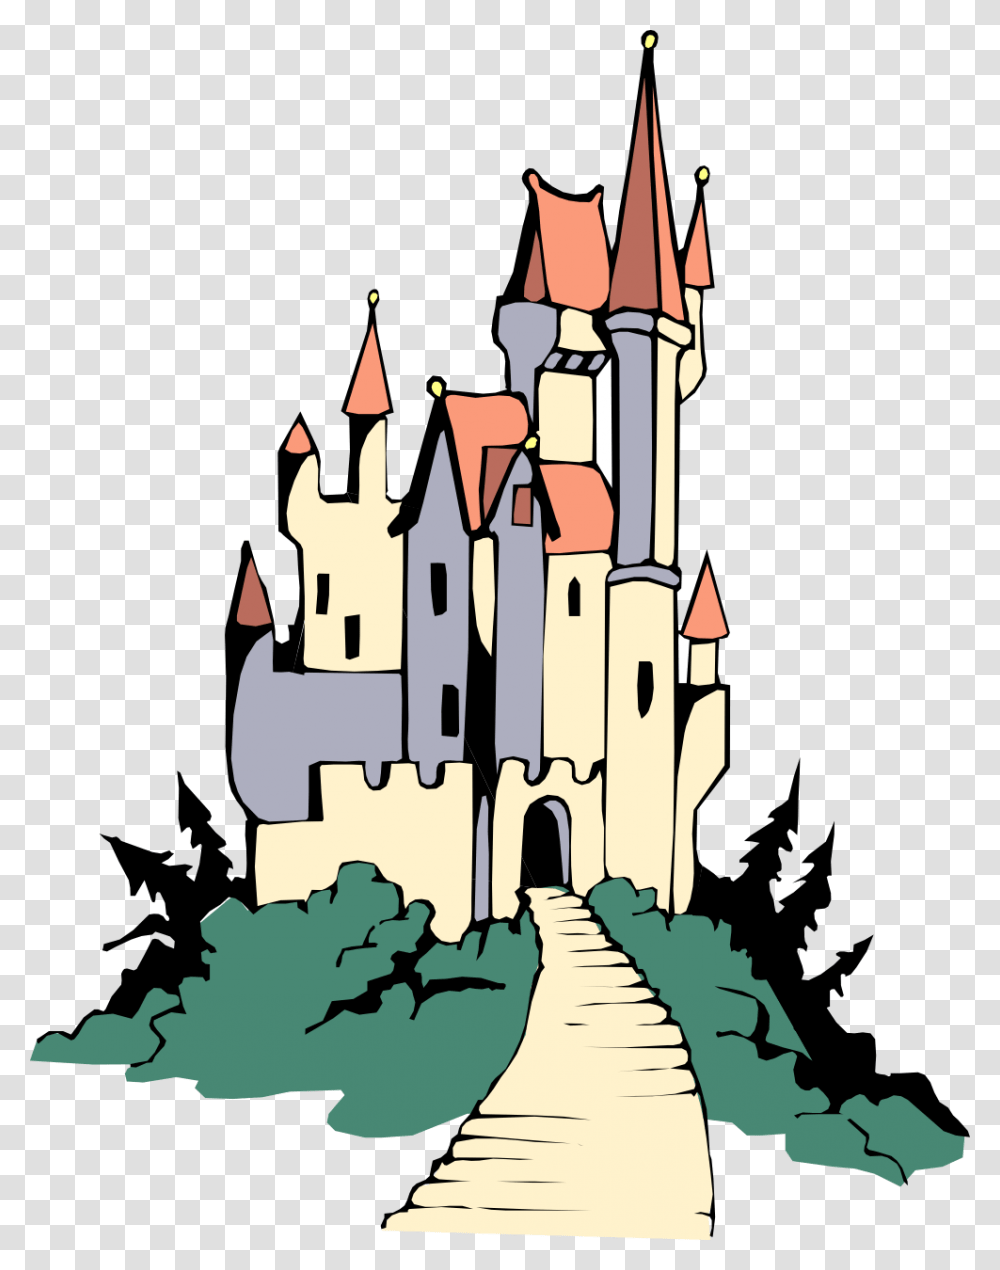 Fairy Tale Castle Clip Art, Architecture, Building, Spire, Plant Transparent Png